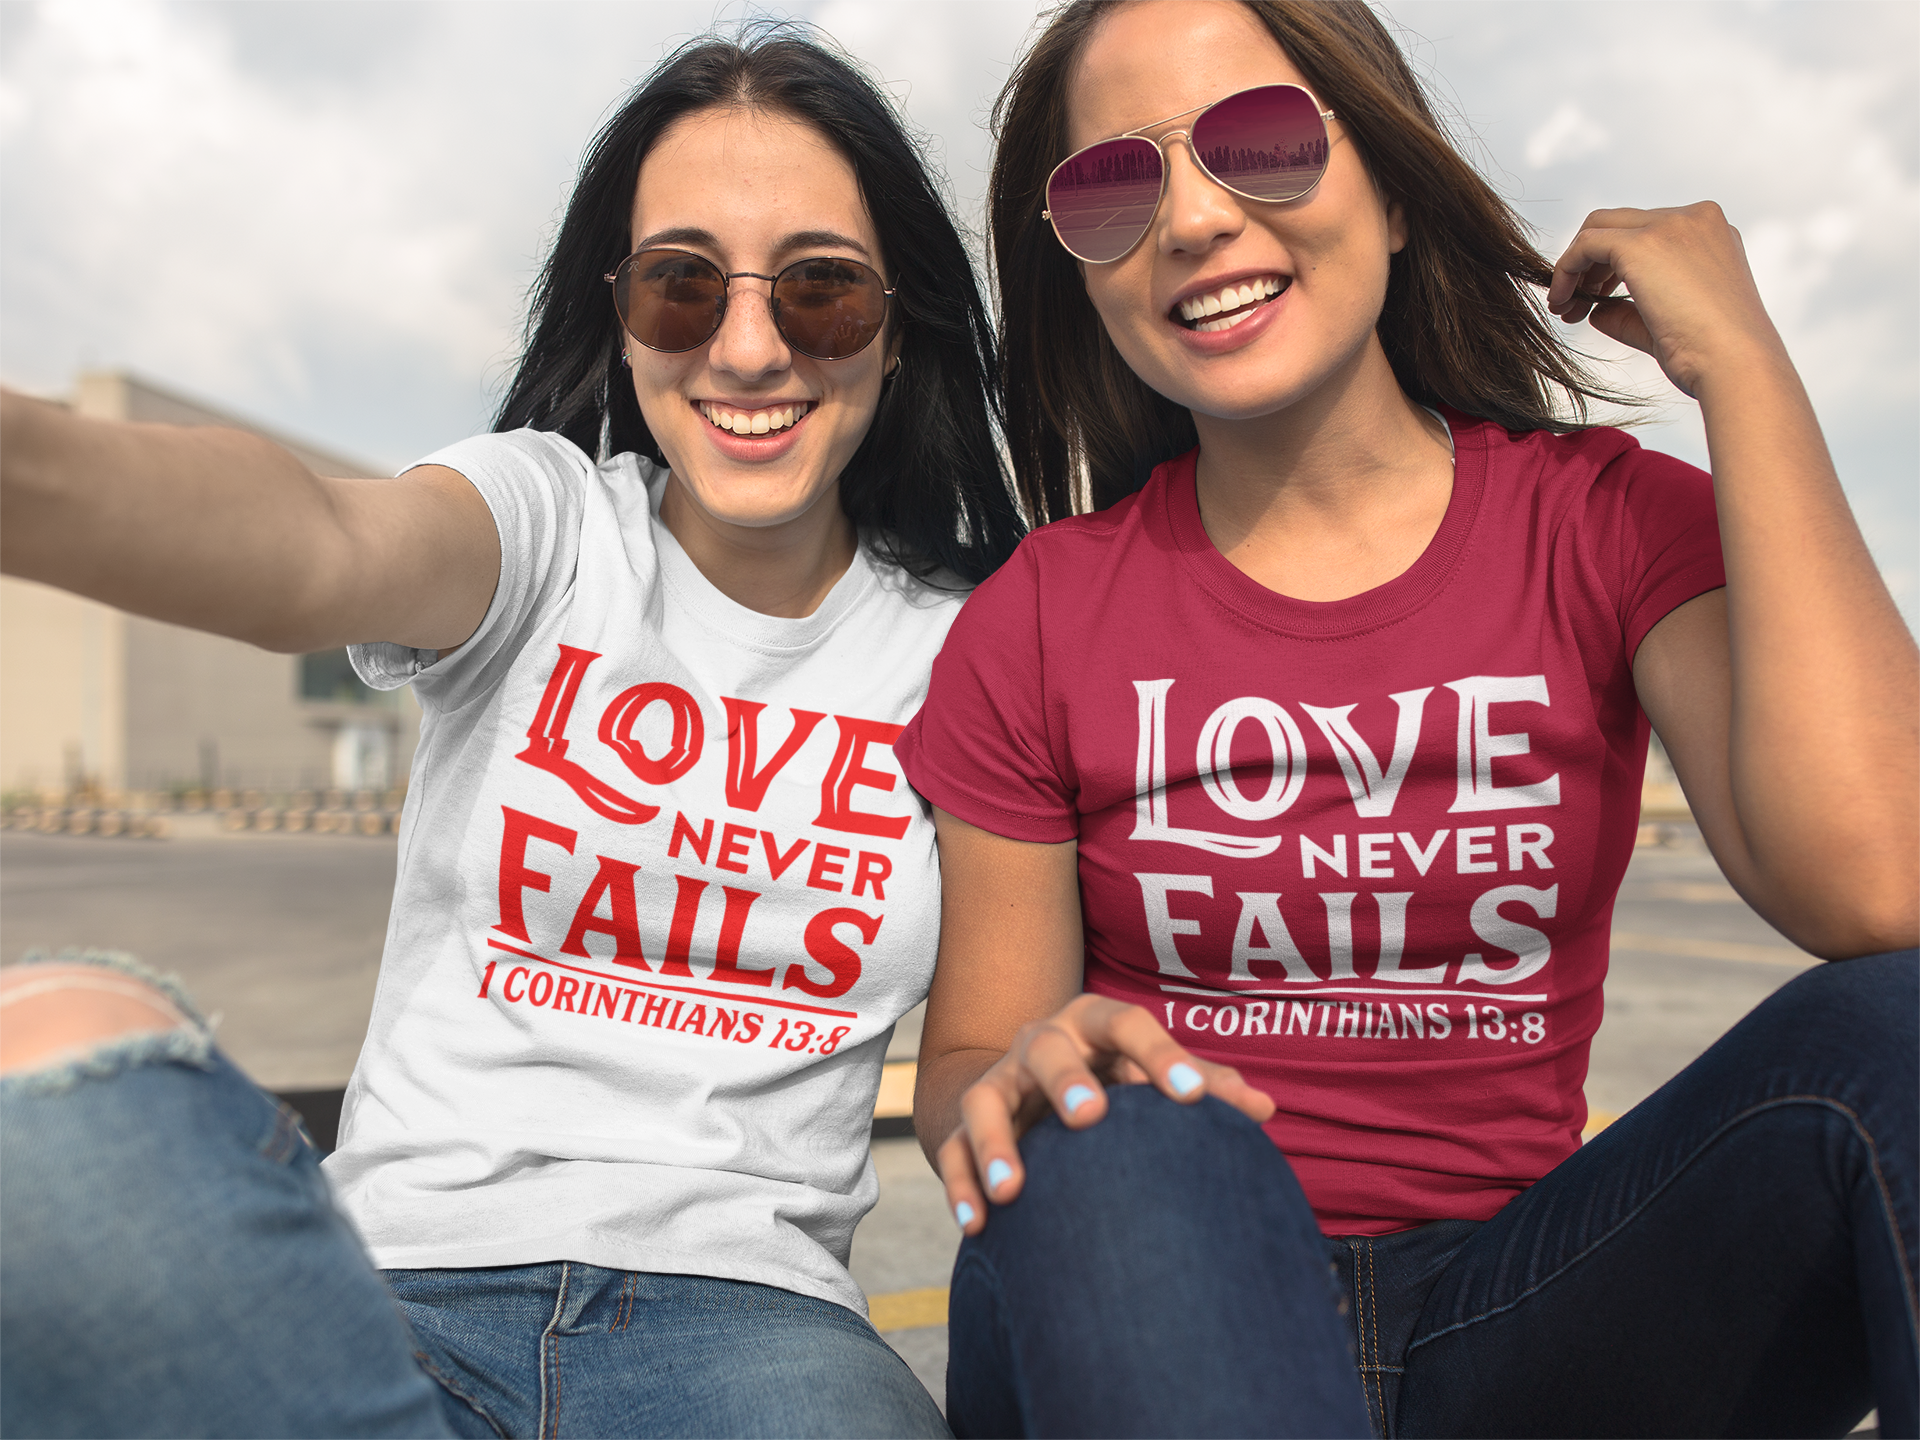 Your Love Never Fails Women T Shirt